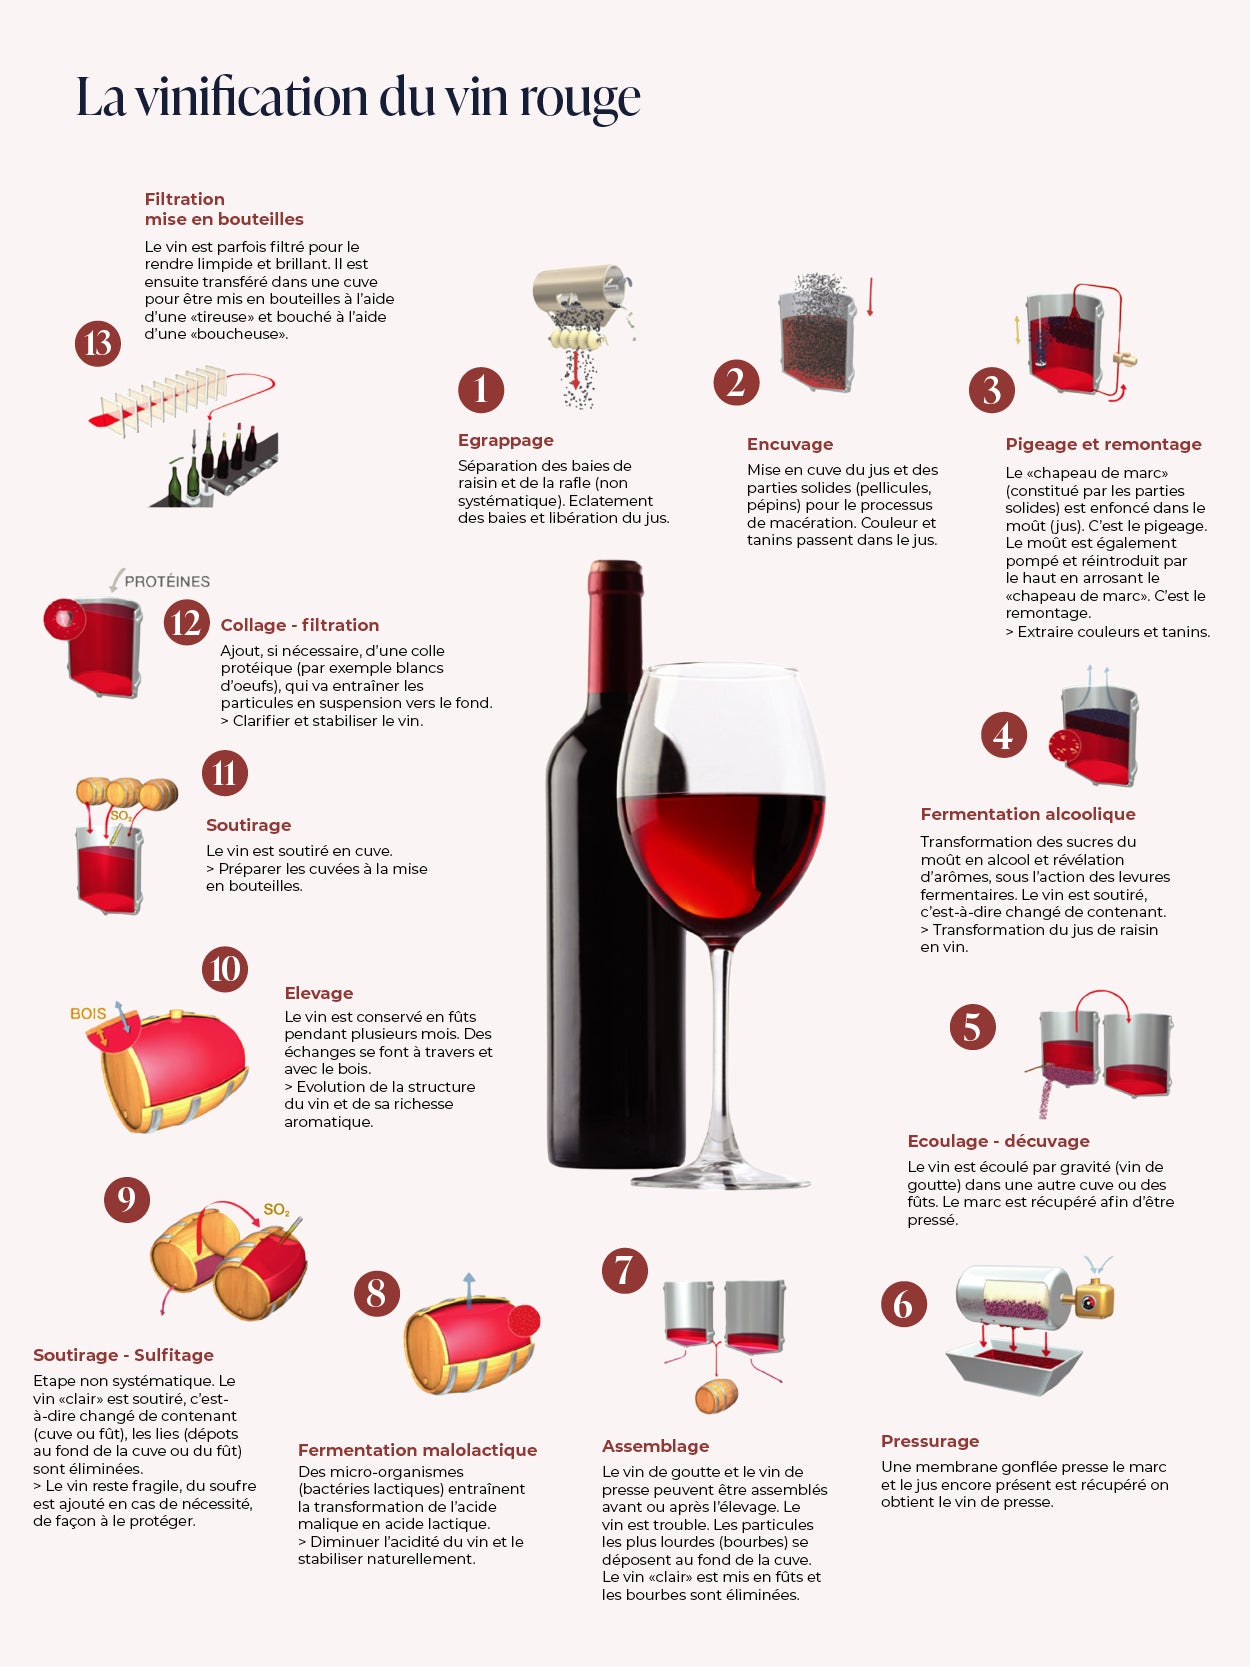 Les étapes de vinification du vin blanc